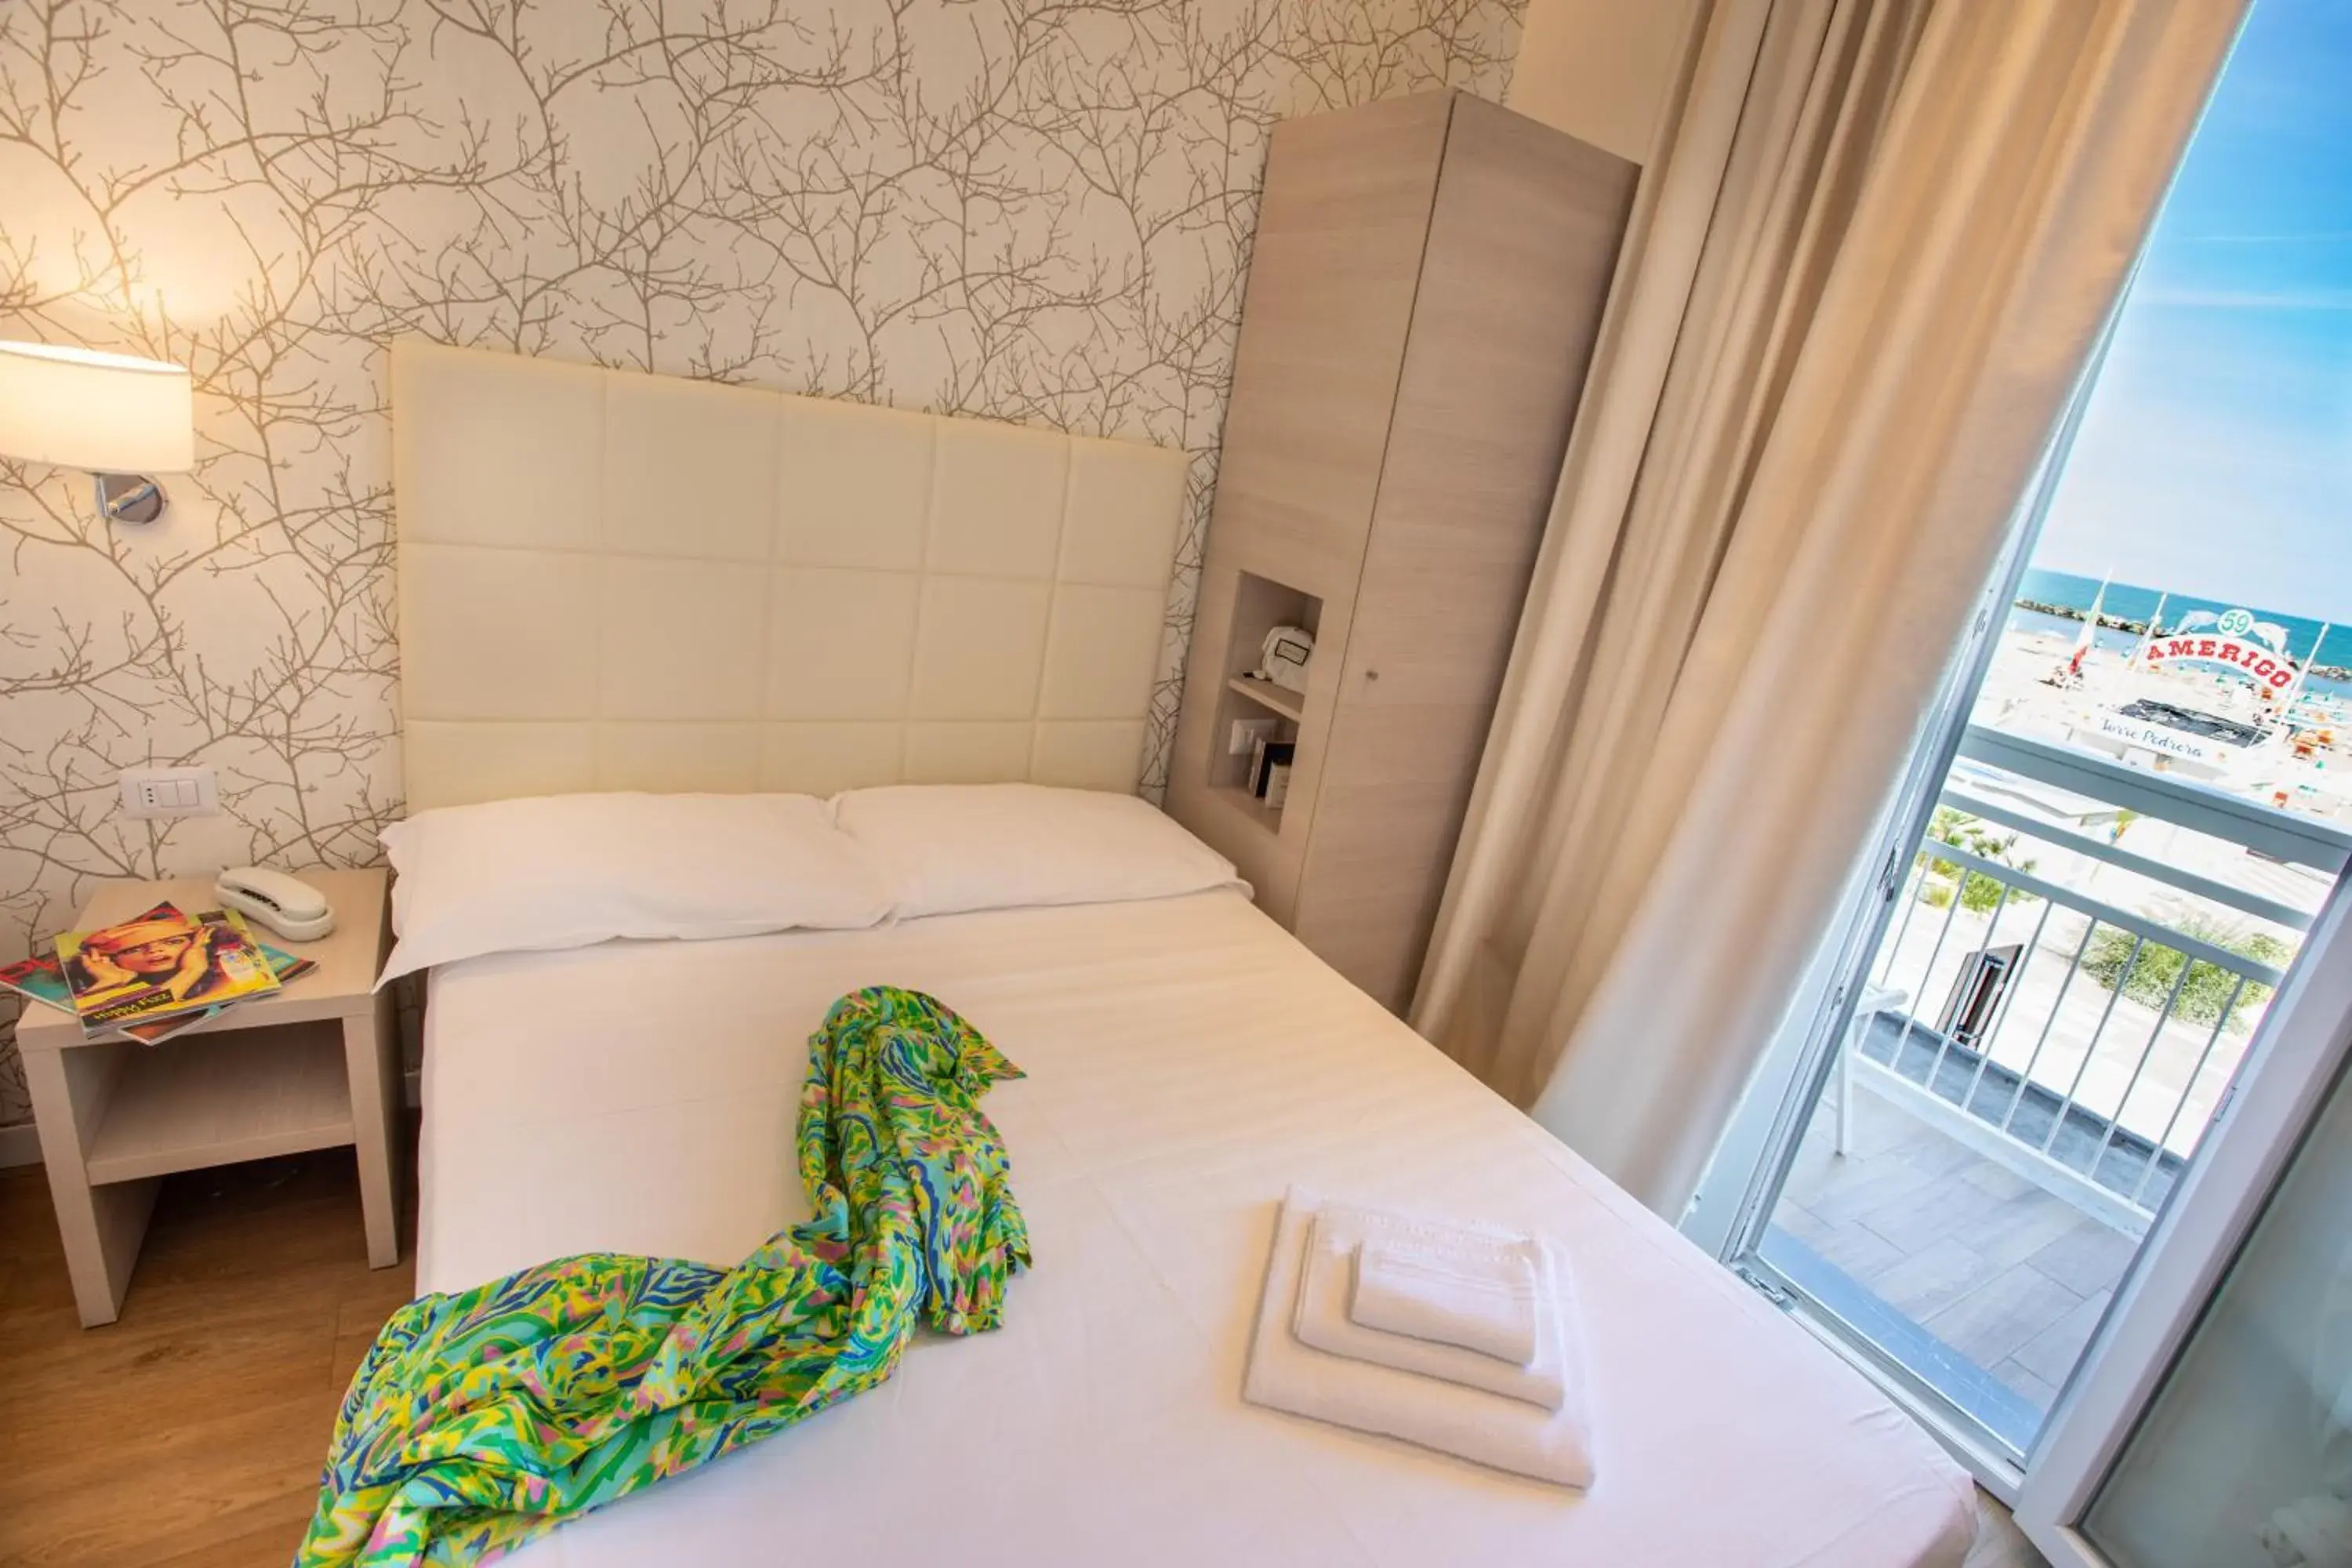 Bed in Hb Hotels Orchidea Blu